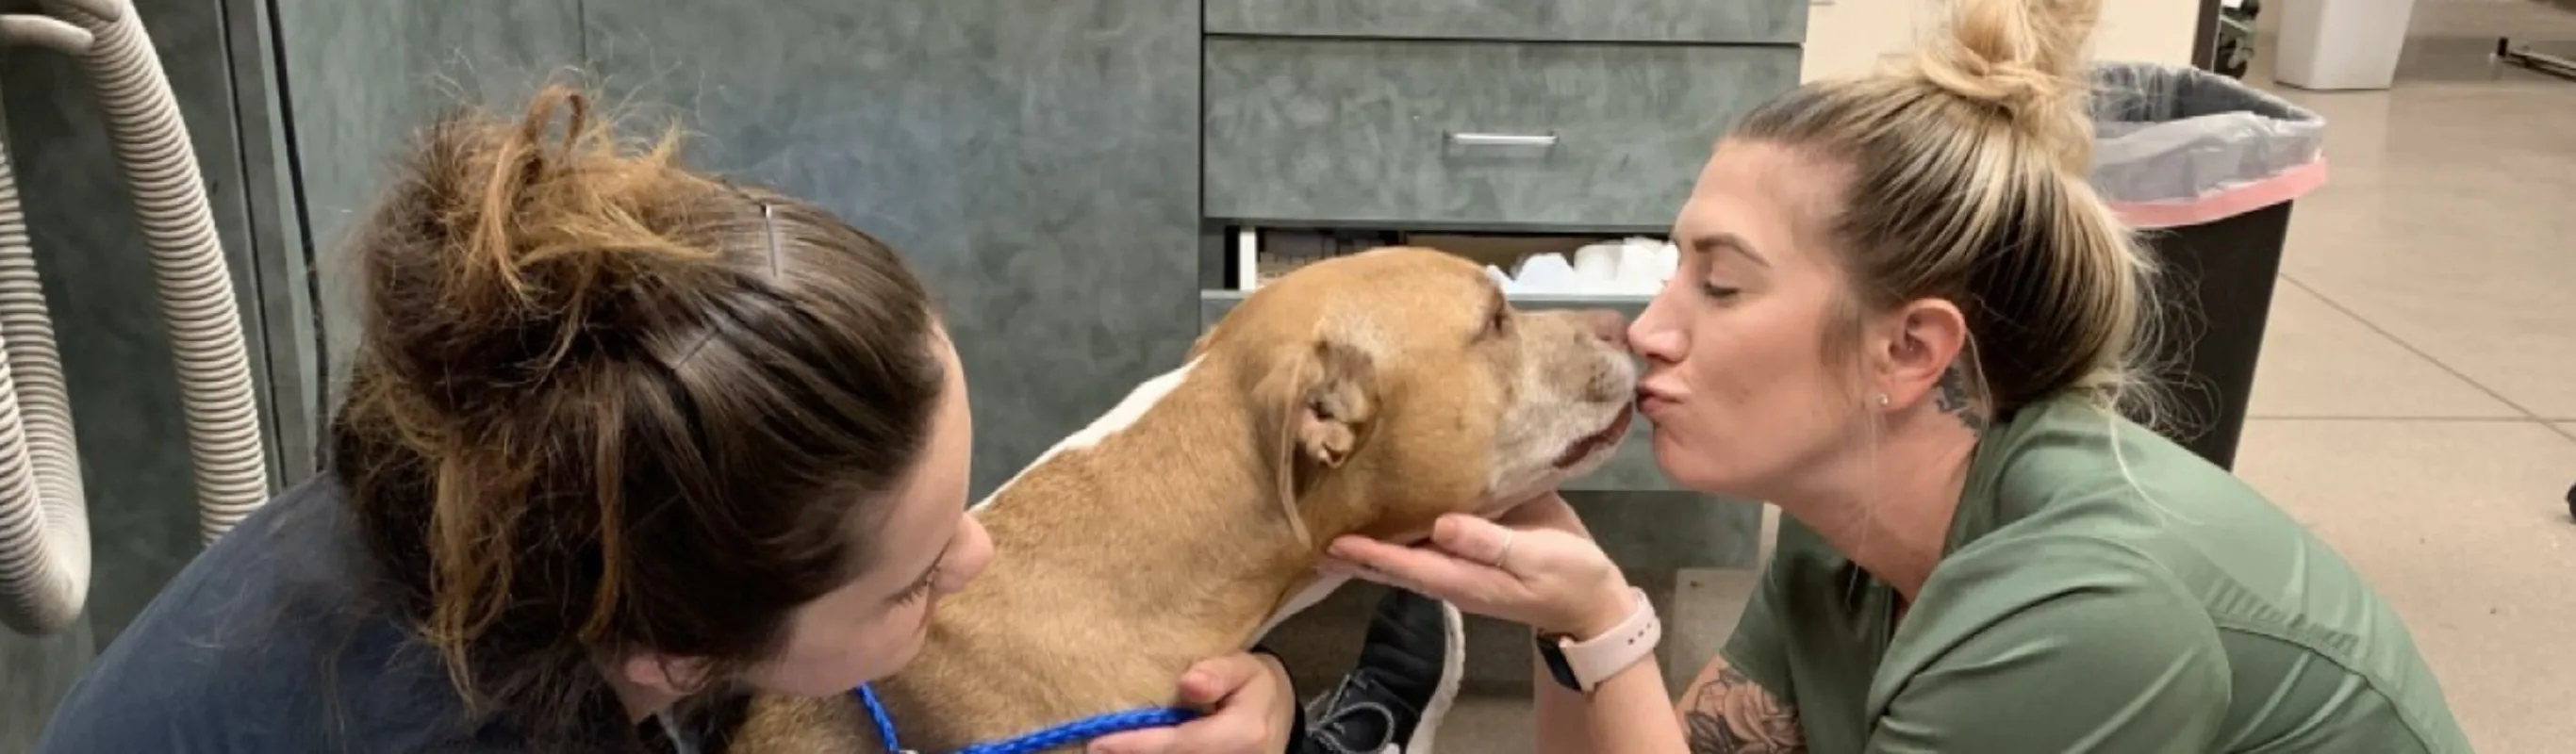 Abby Pet Hospital - Vet Tech Kissing Dog